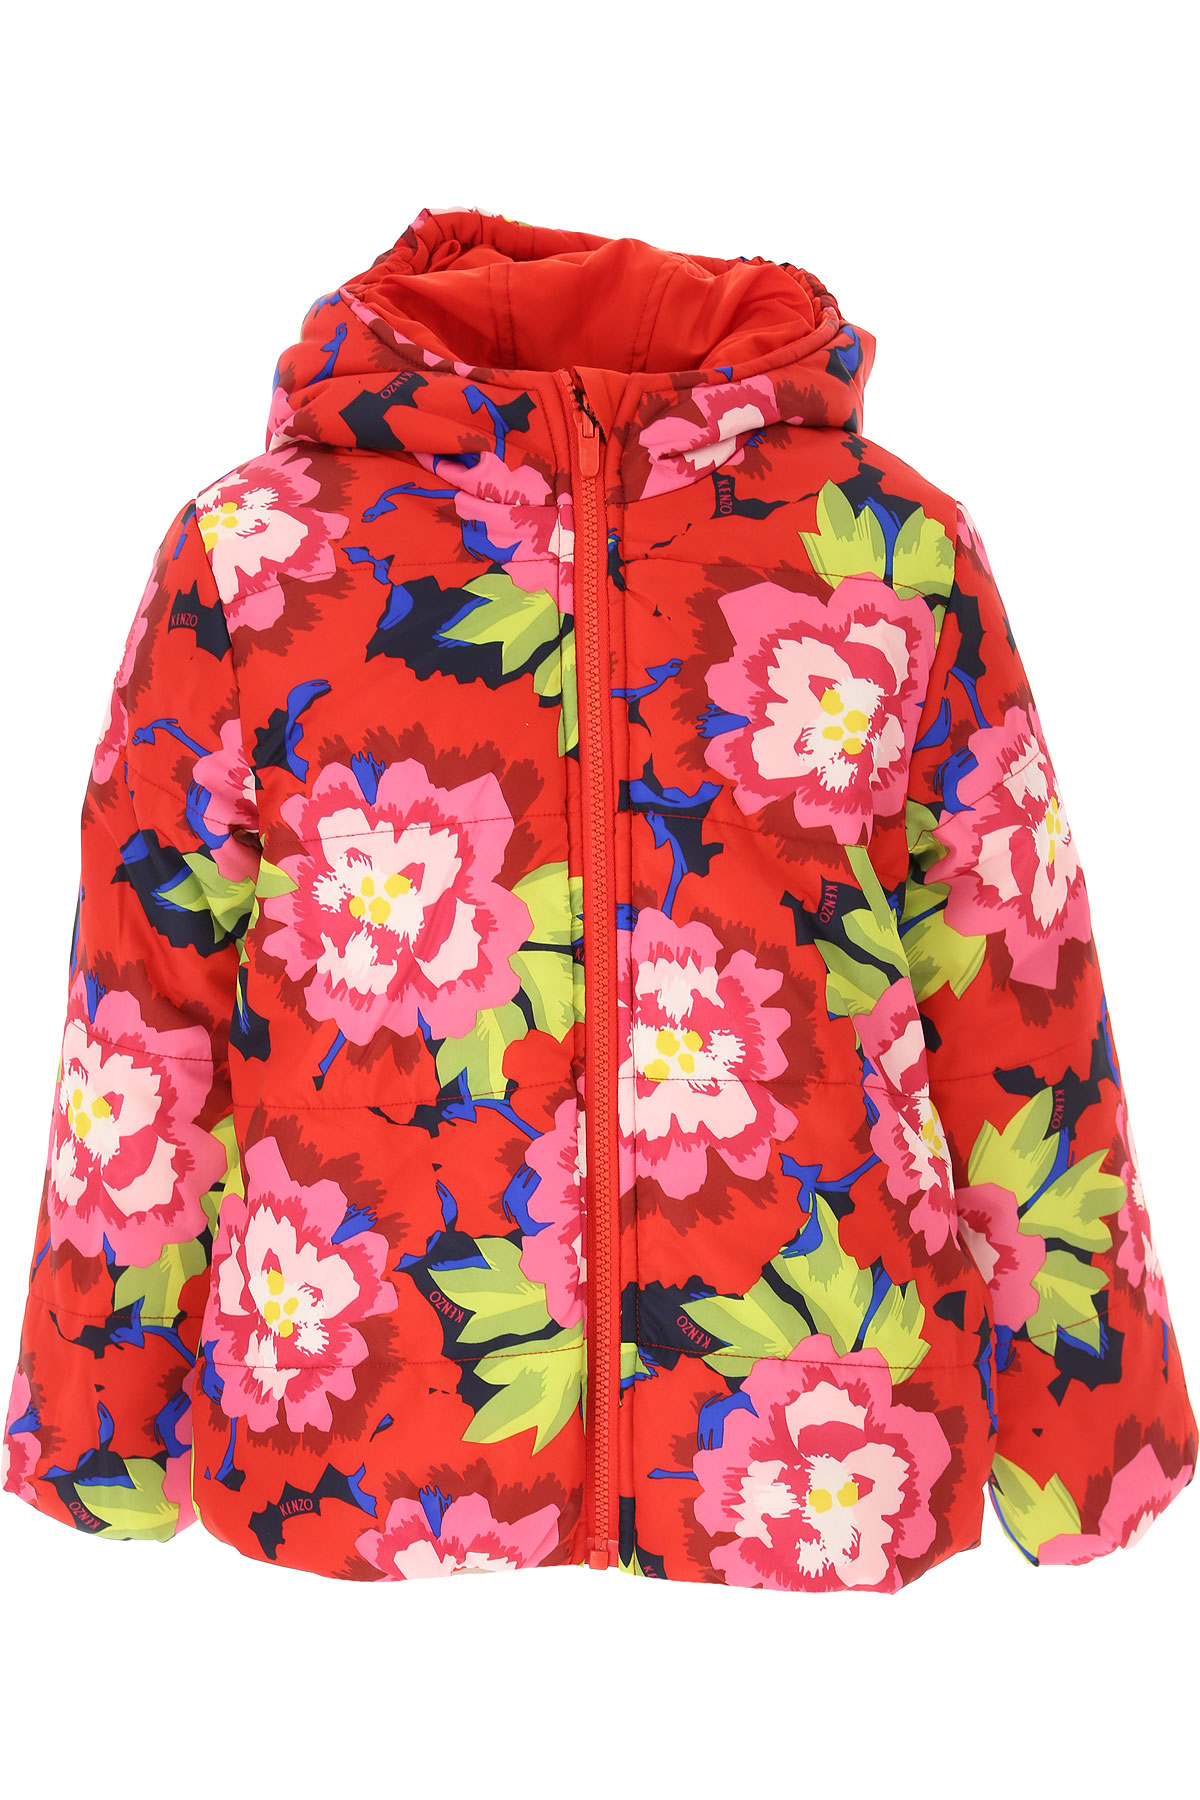 Kenzo Kinder Daunen Jacke für Mädchen, Soft Shell Ski Jacken Günstig im Sale, Rot, Polyester, 2017, 10Y 12Y 14Y 8Y